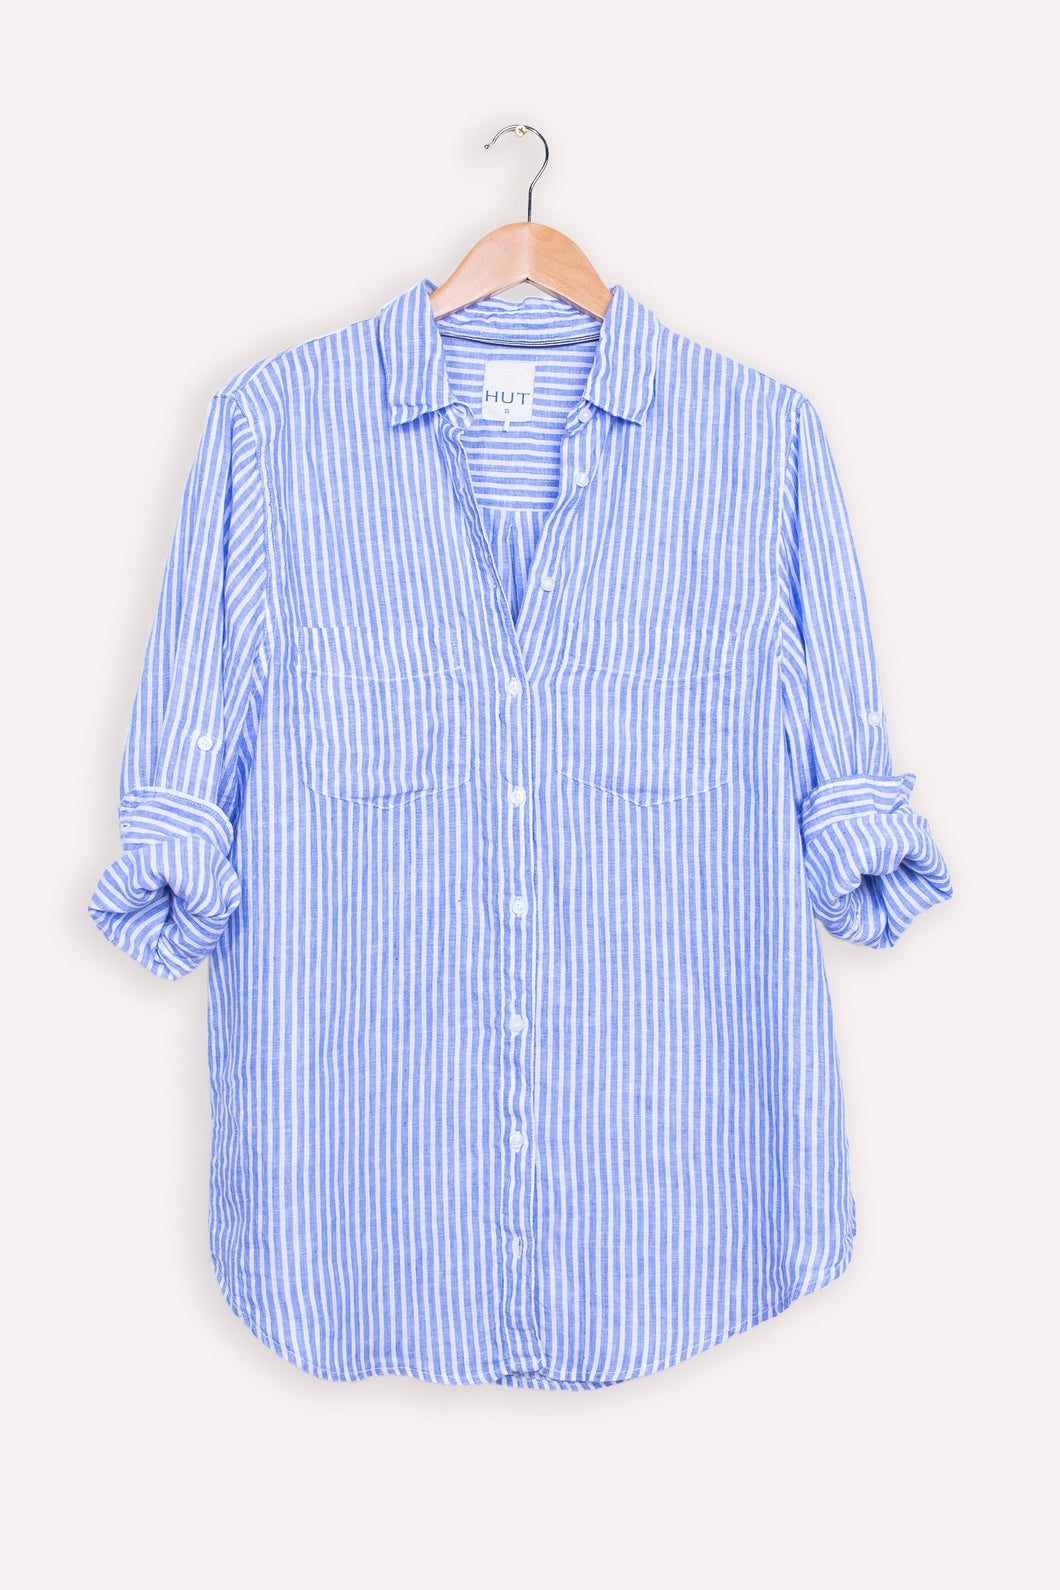 White & Blue Chambray Stripe Linen Shirt